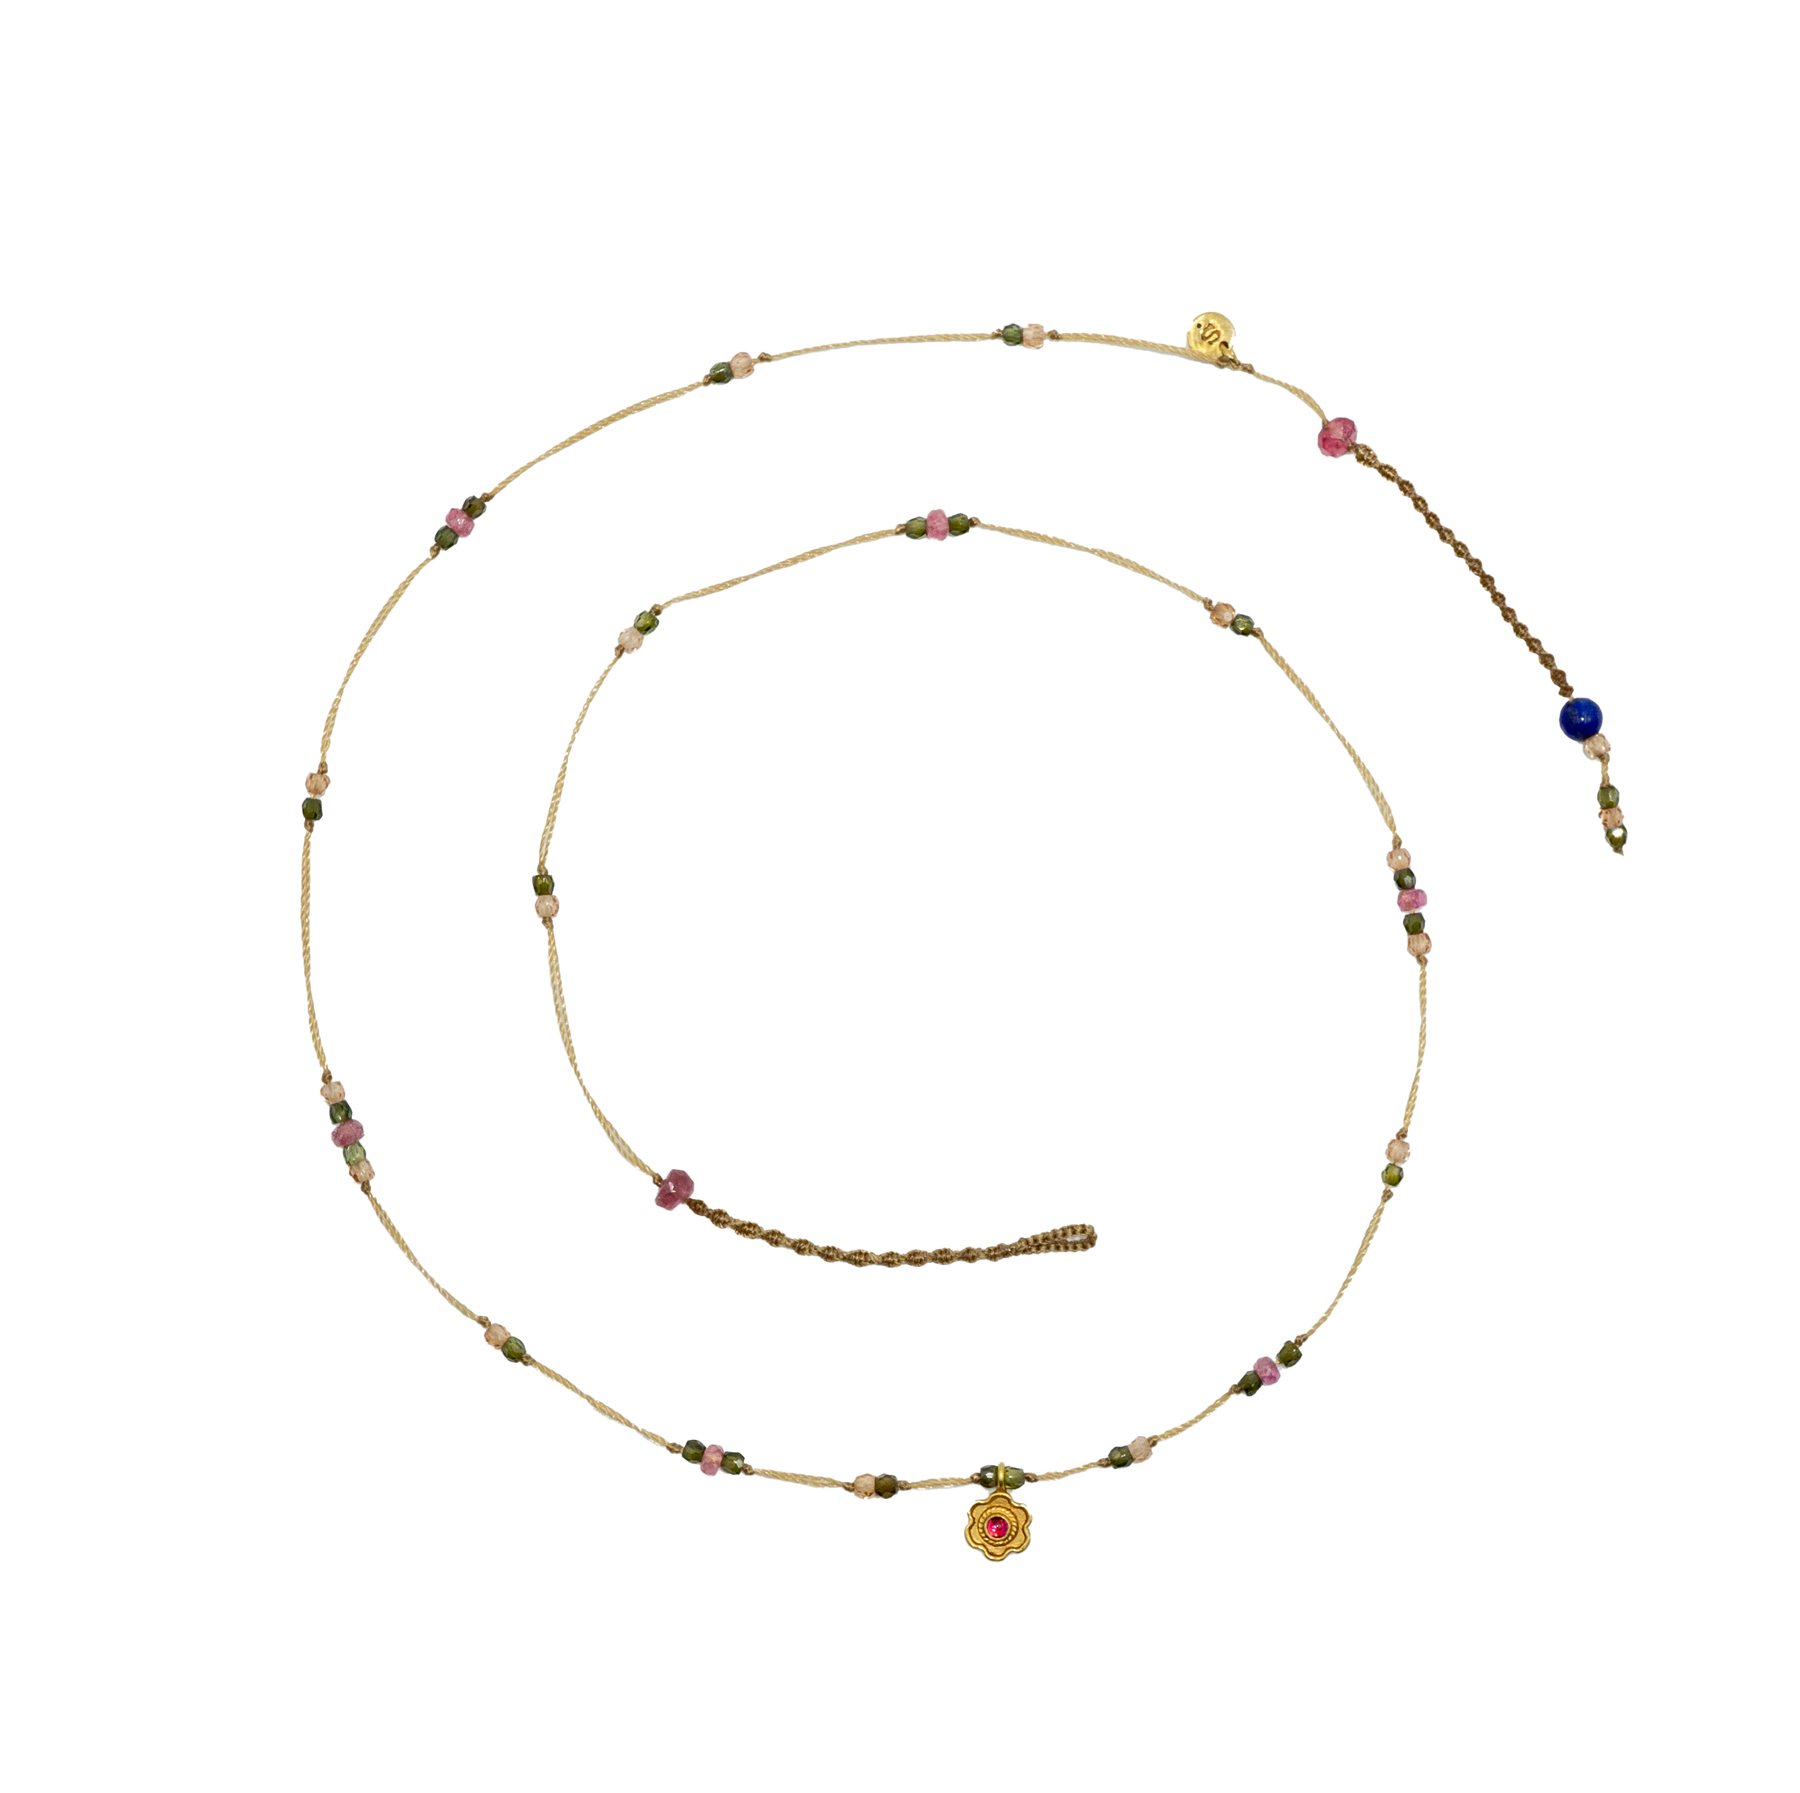 Goldie Flower Necklace - Ruby - Mix Pink Tourmaline - Beige Thread